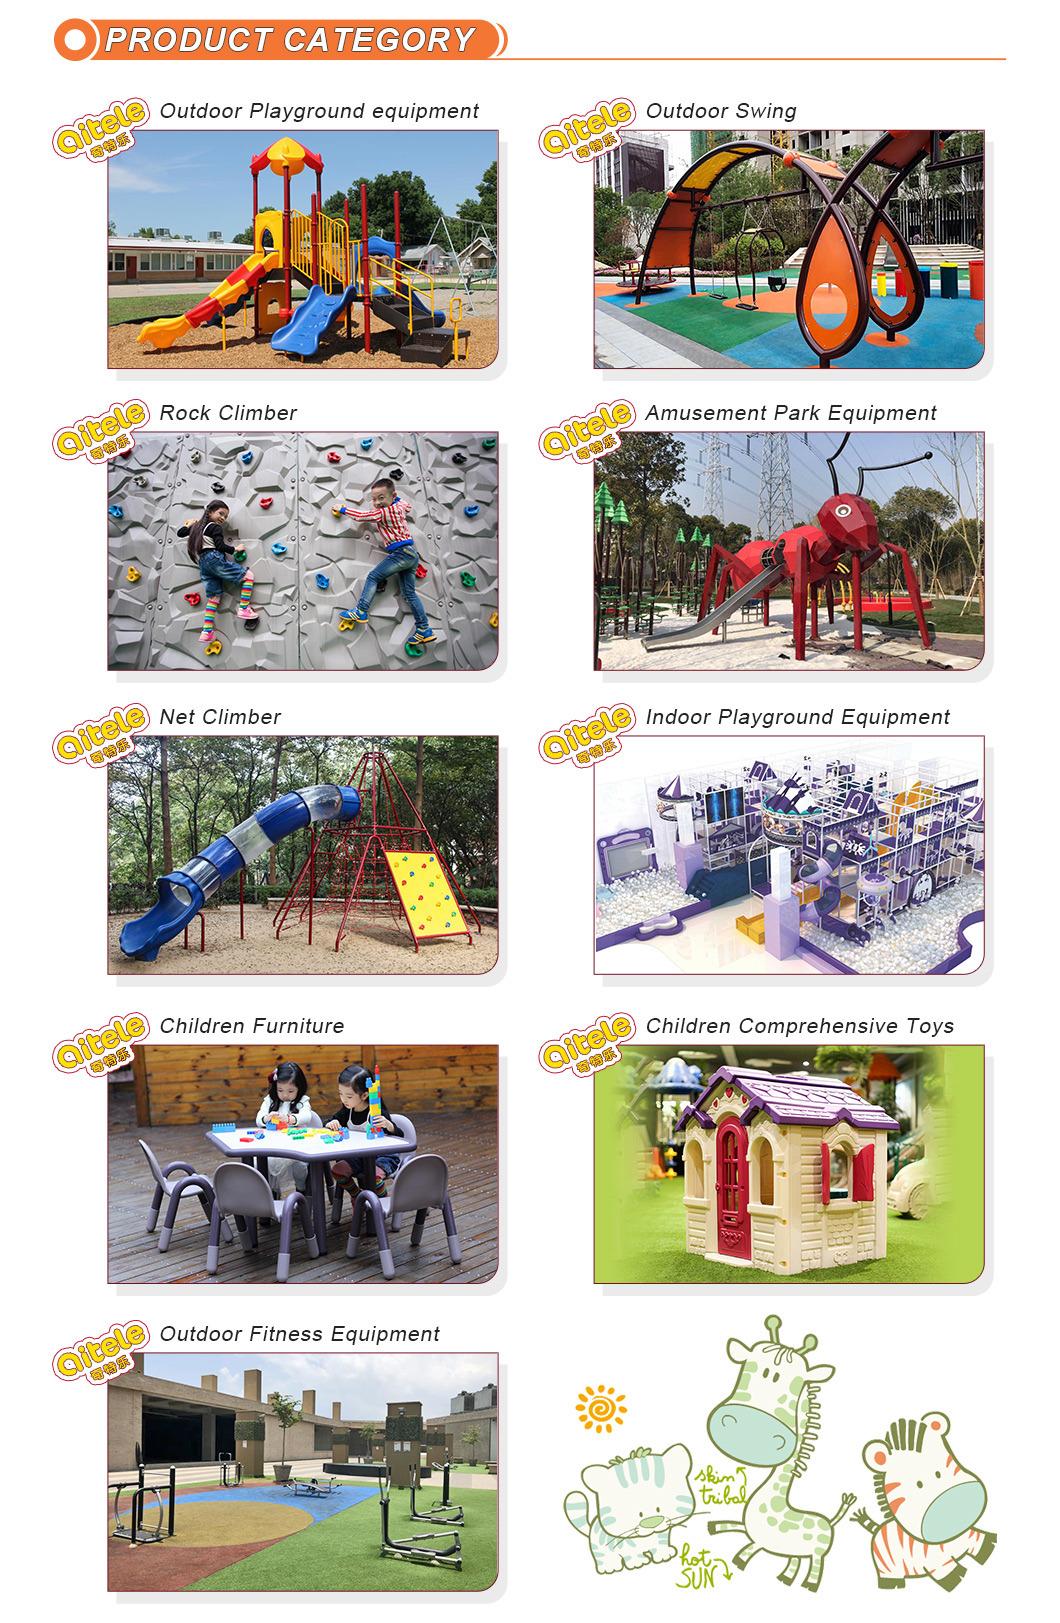 Qitele Simple 3.5′′series Outdoor Playground Equipment